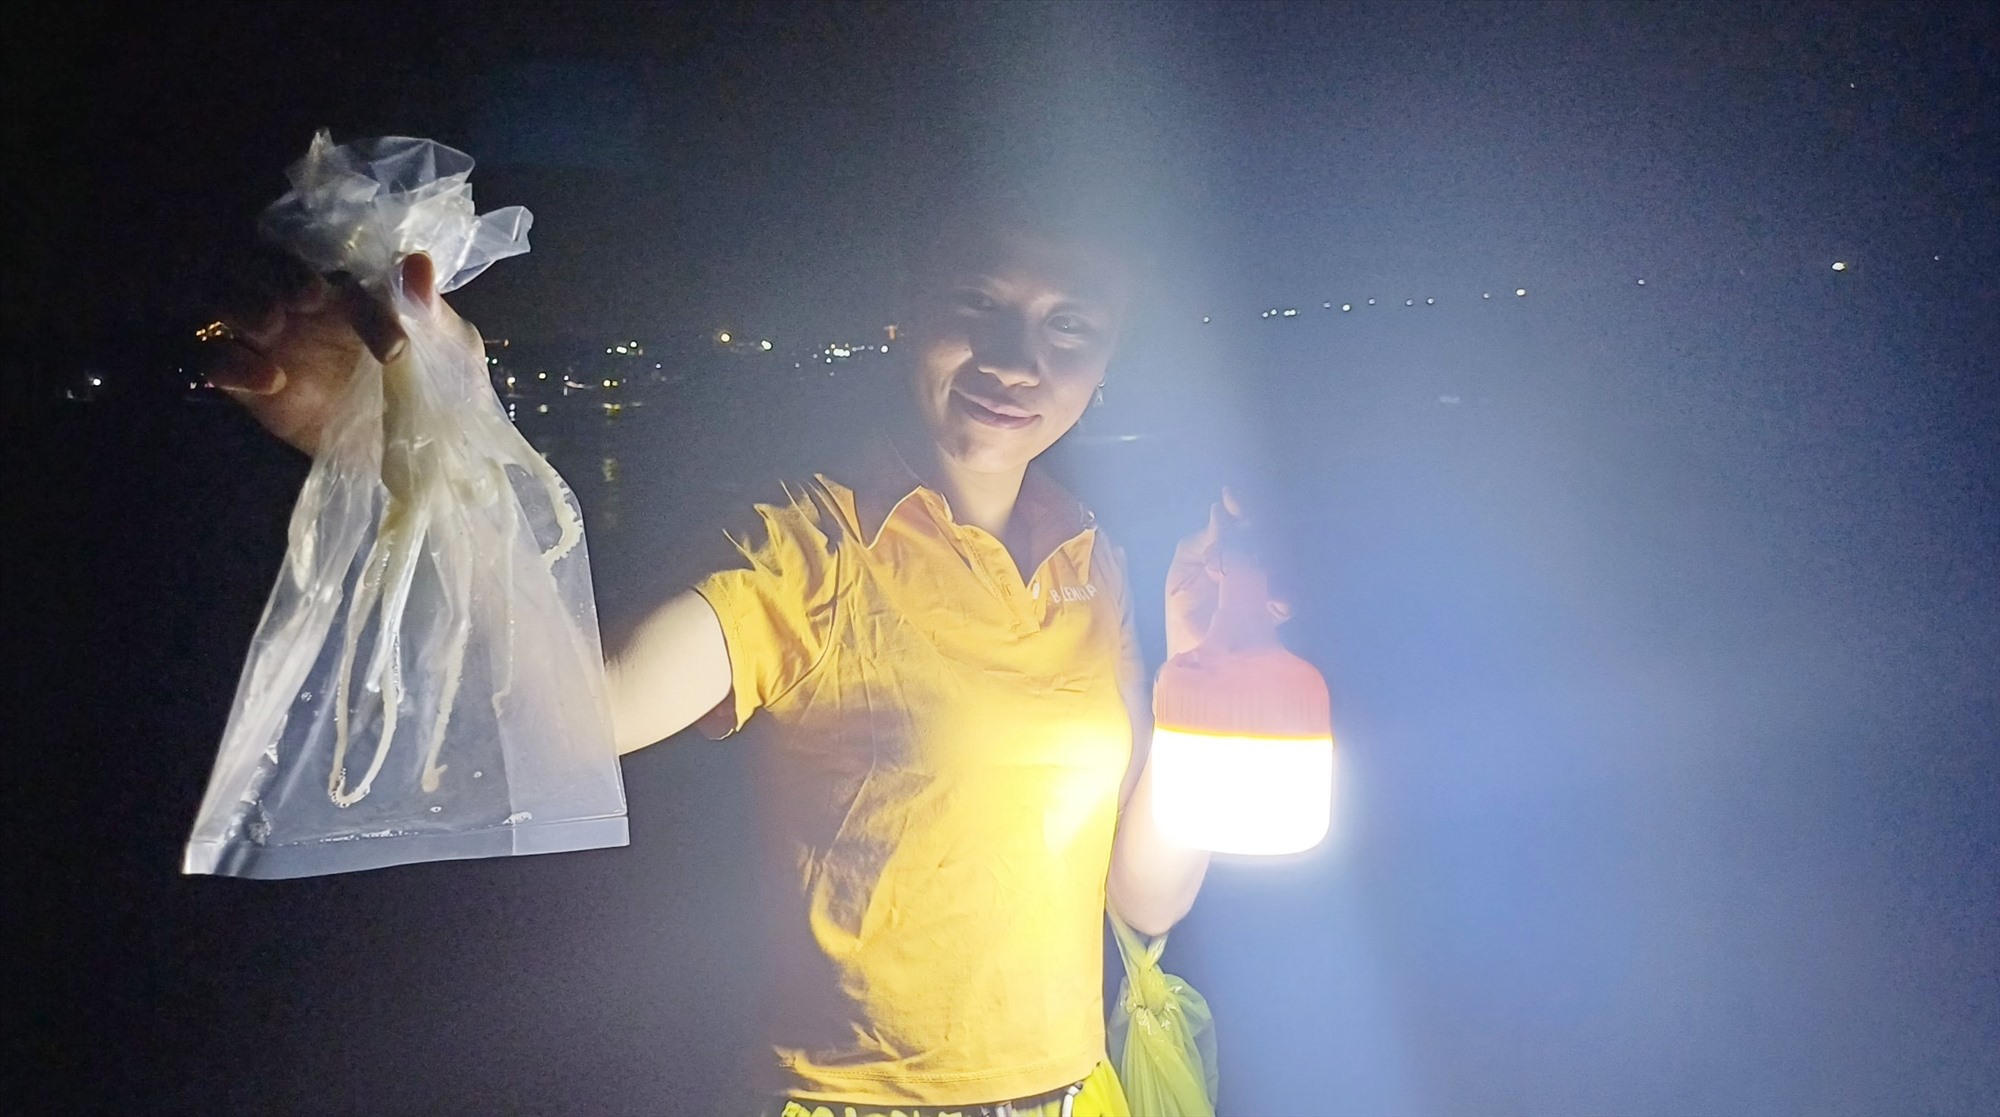 Đổ xô rọi đèn pin xuống một vùng biển ở Quảng Nam bắt con vật cầm lên nó cuốn tay nhồn nhột - Ảnh 4.